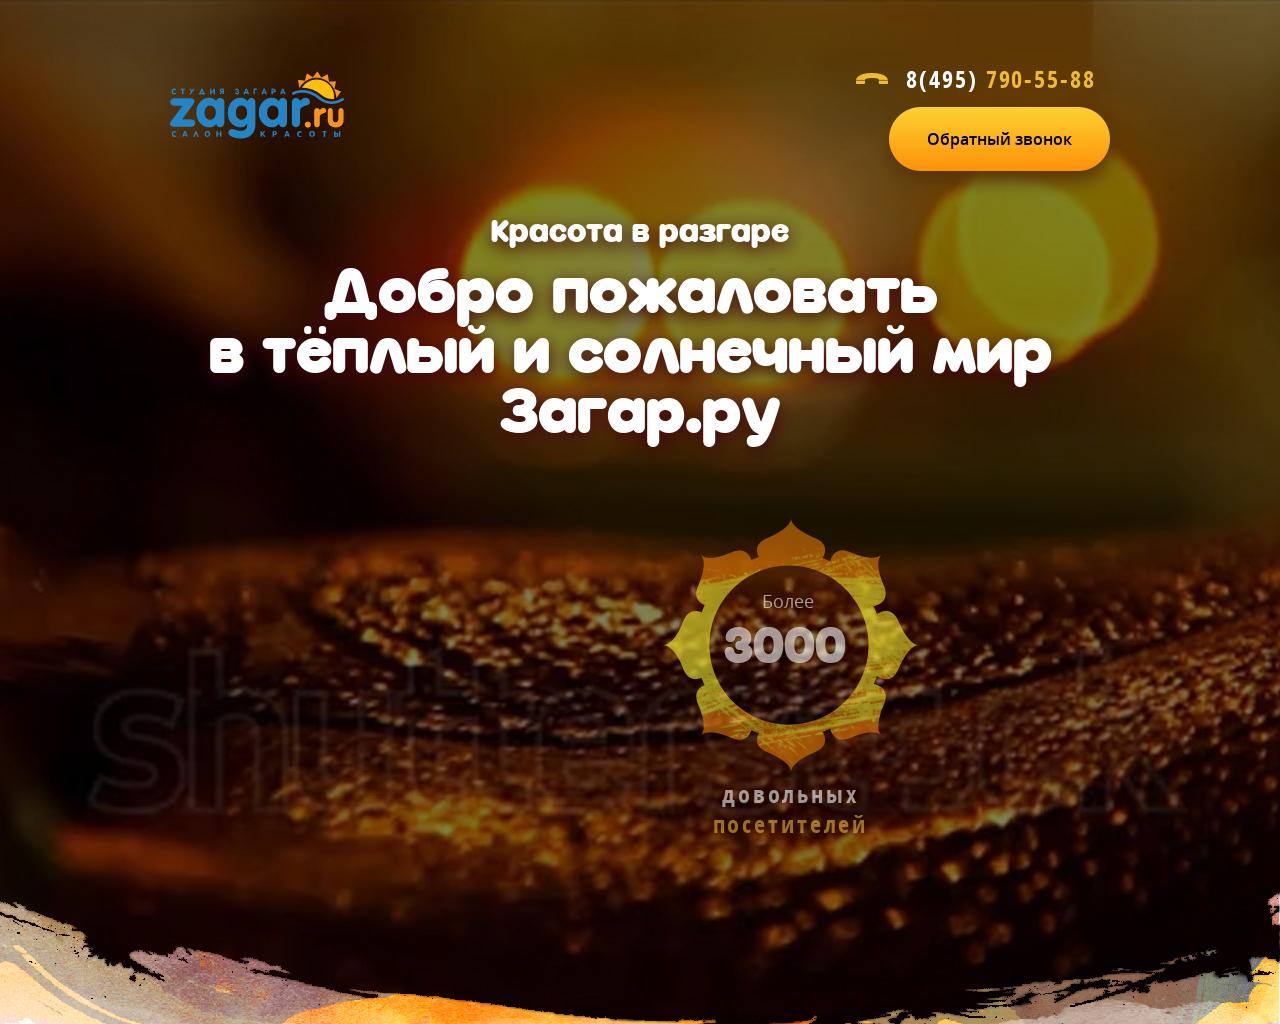 Изображение сайта zagar.ru в разрешении 1280x1024